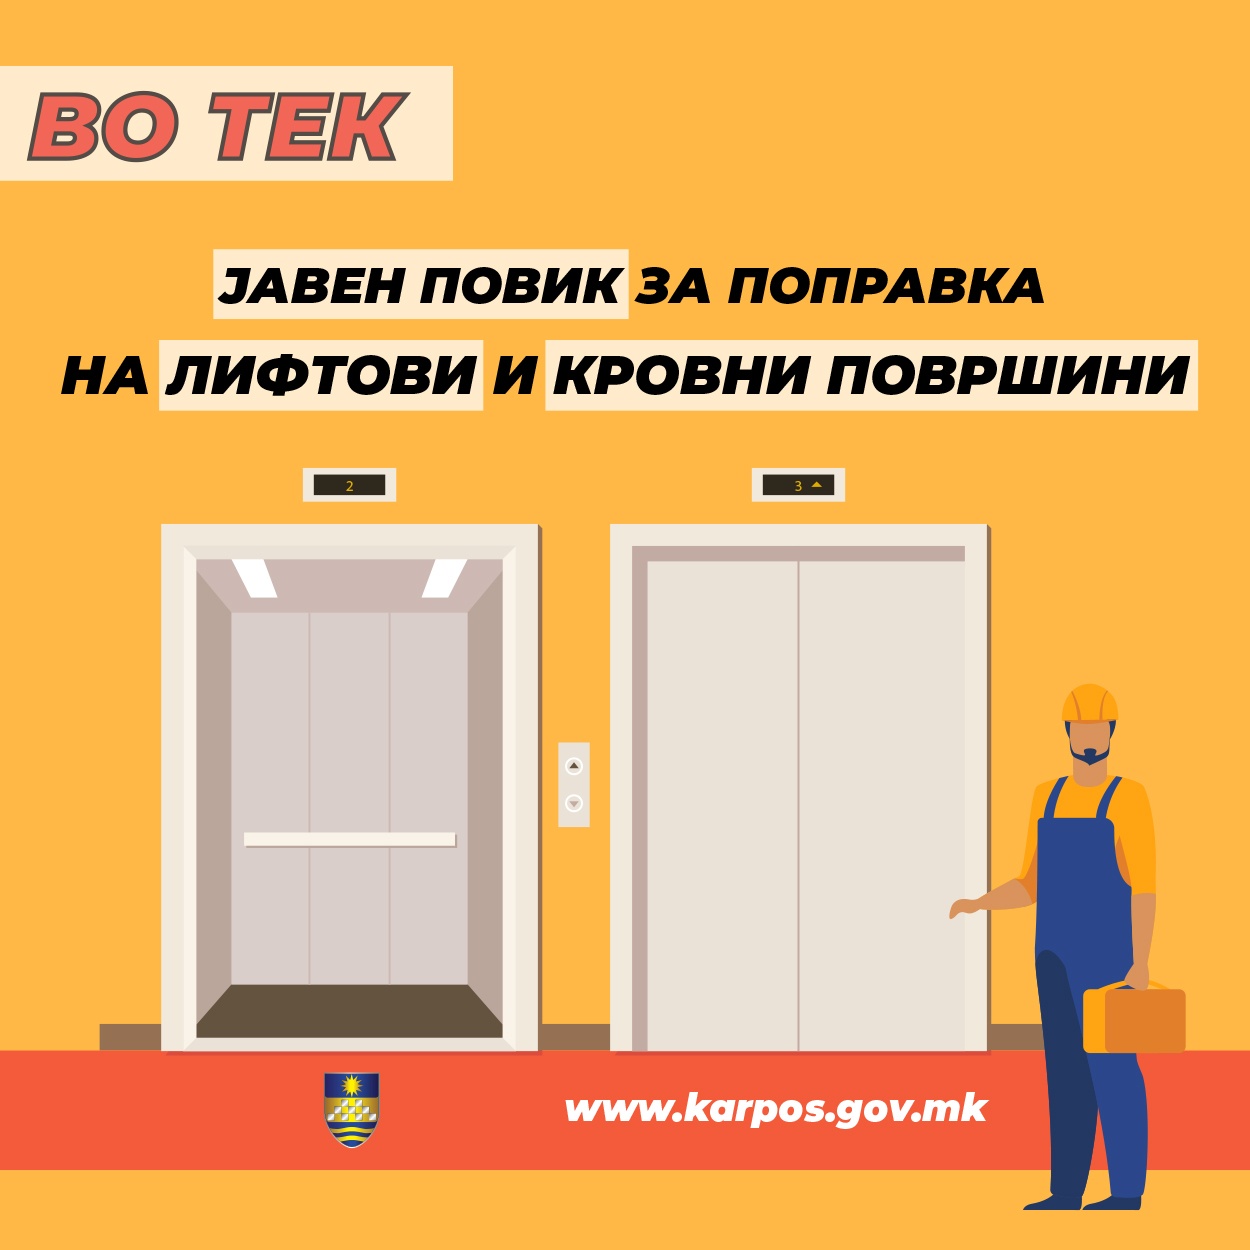 Општина Карпош: Јавен повик за субвенционирање поправки на лифтови и кровови